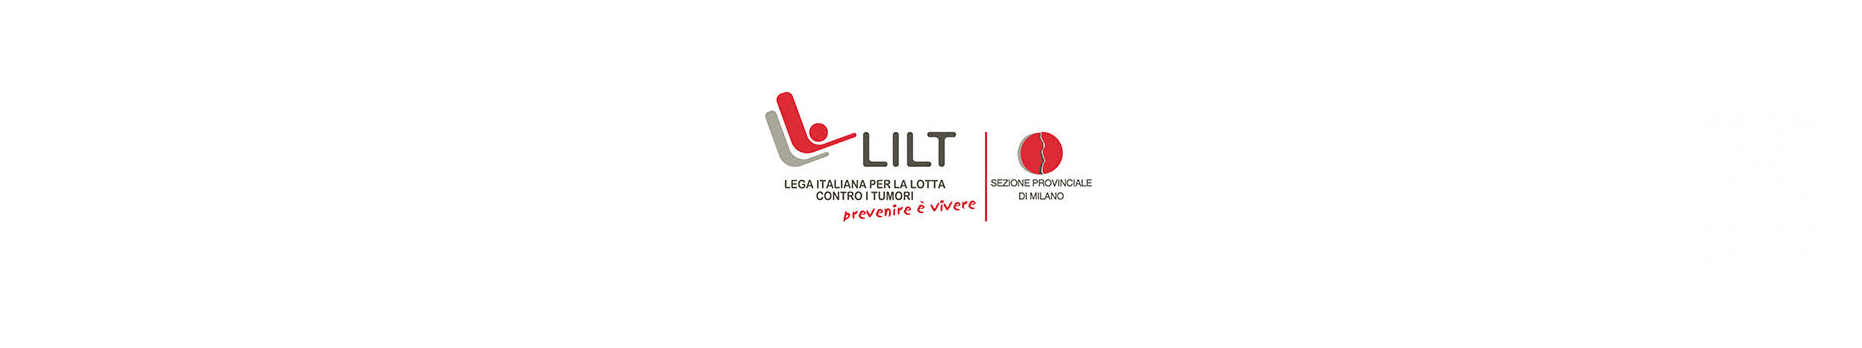 Associazione LILT - Lega Italiana per la lotta contro i tumori - logo